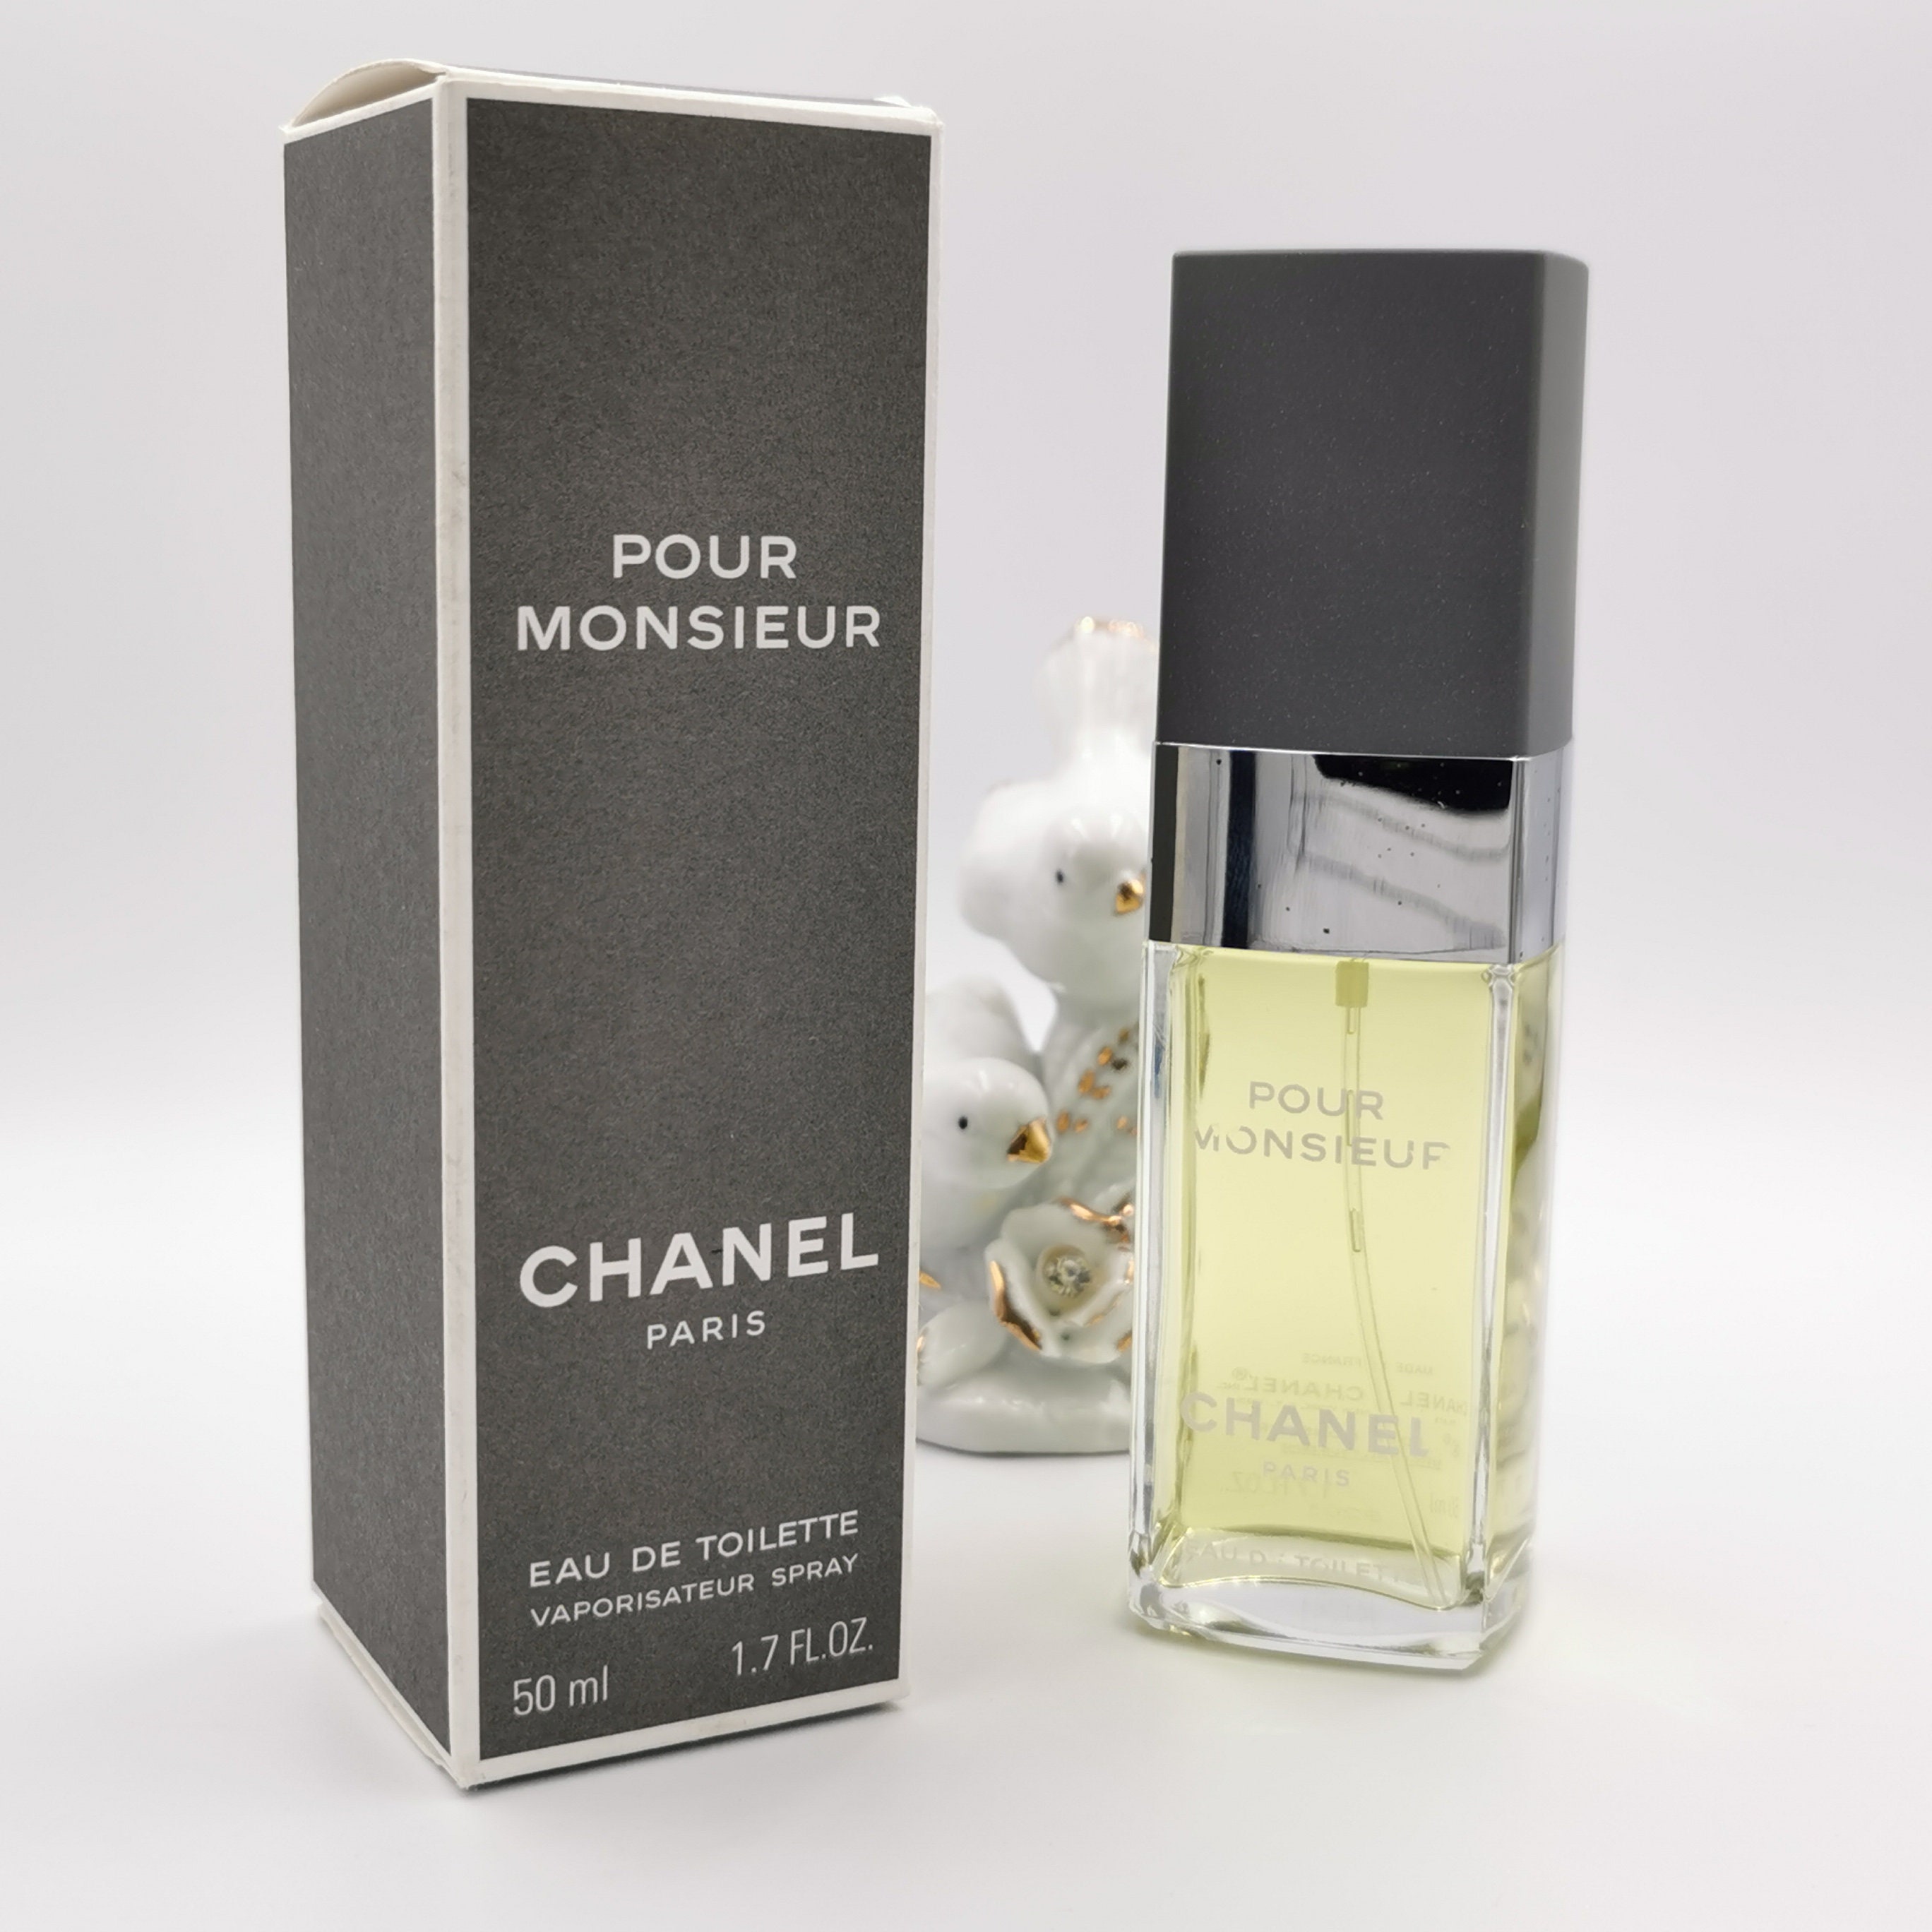 Chanel Pour Monsieur - Eau de Parfum (tester with cap)